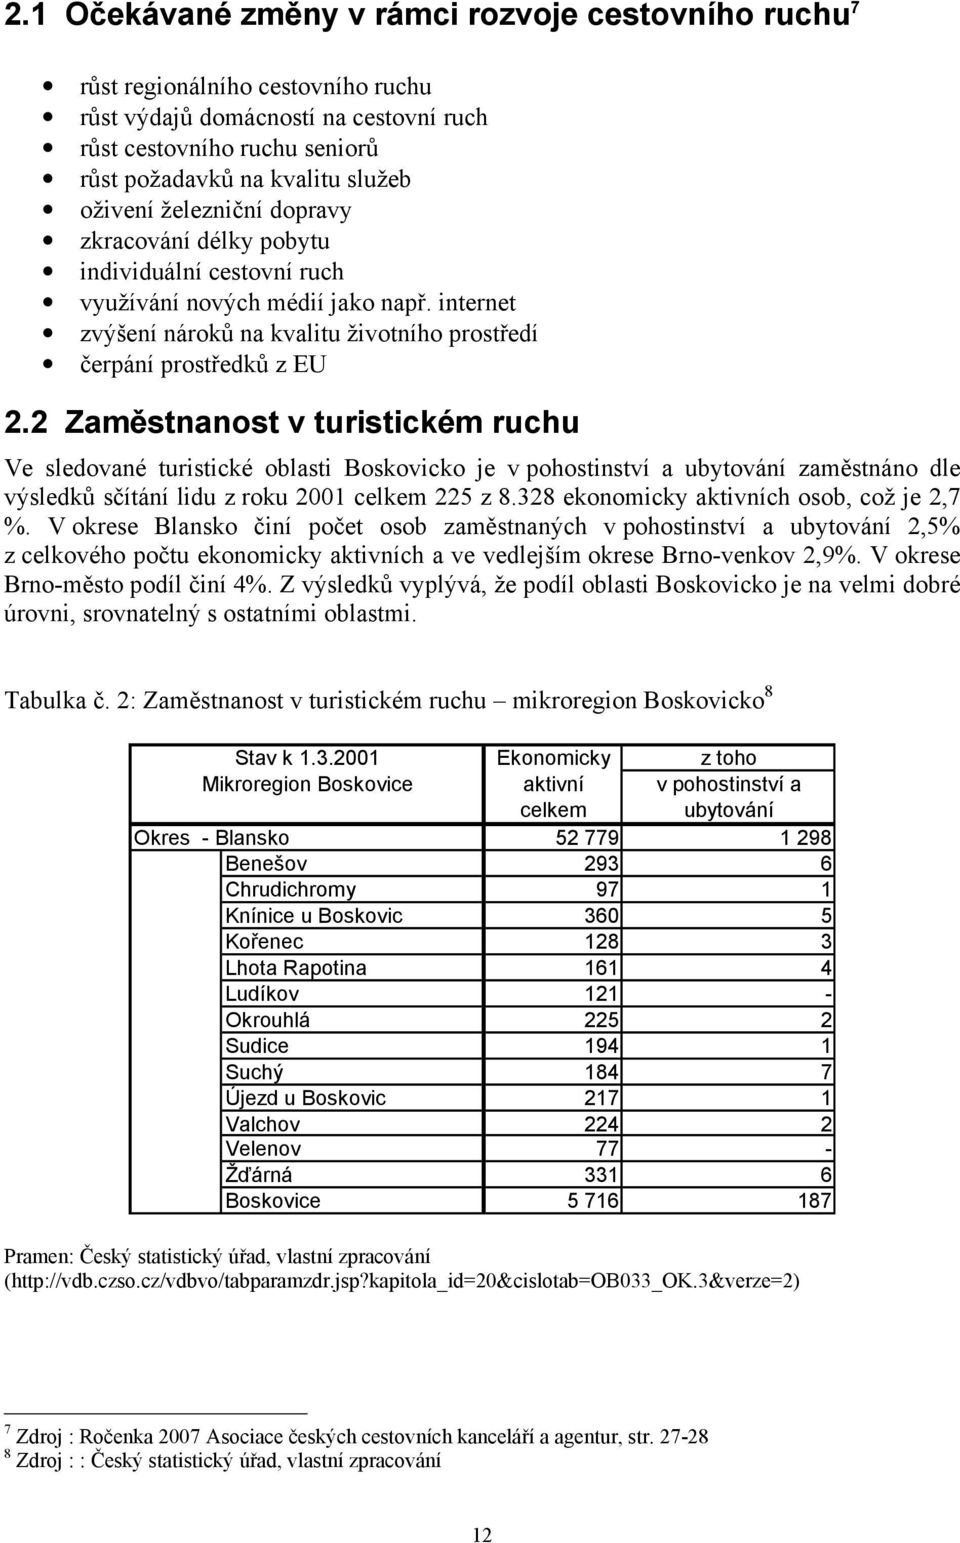 2 Zaměstnanost v turistickém ruchu Ve sledované turistické oblasti Boskovicko je v pohostinství a ubytování zaměstnáno dle výsledků sčítání lidu z roku 2001 celkem 225 z 8.